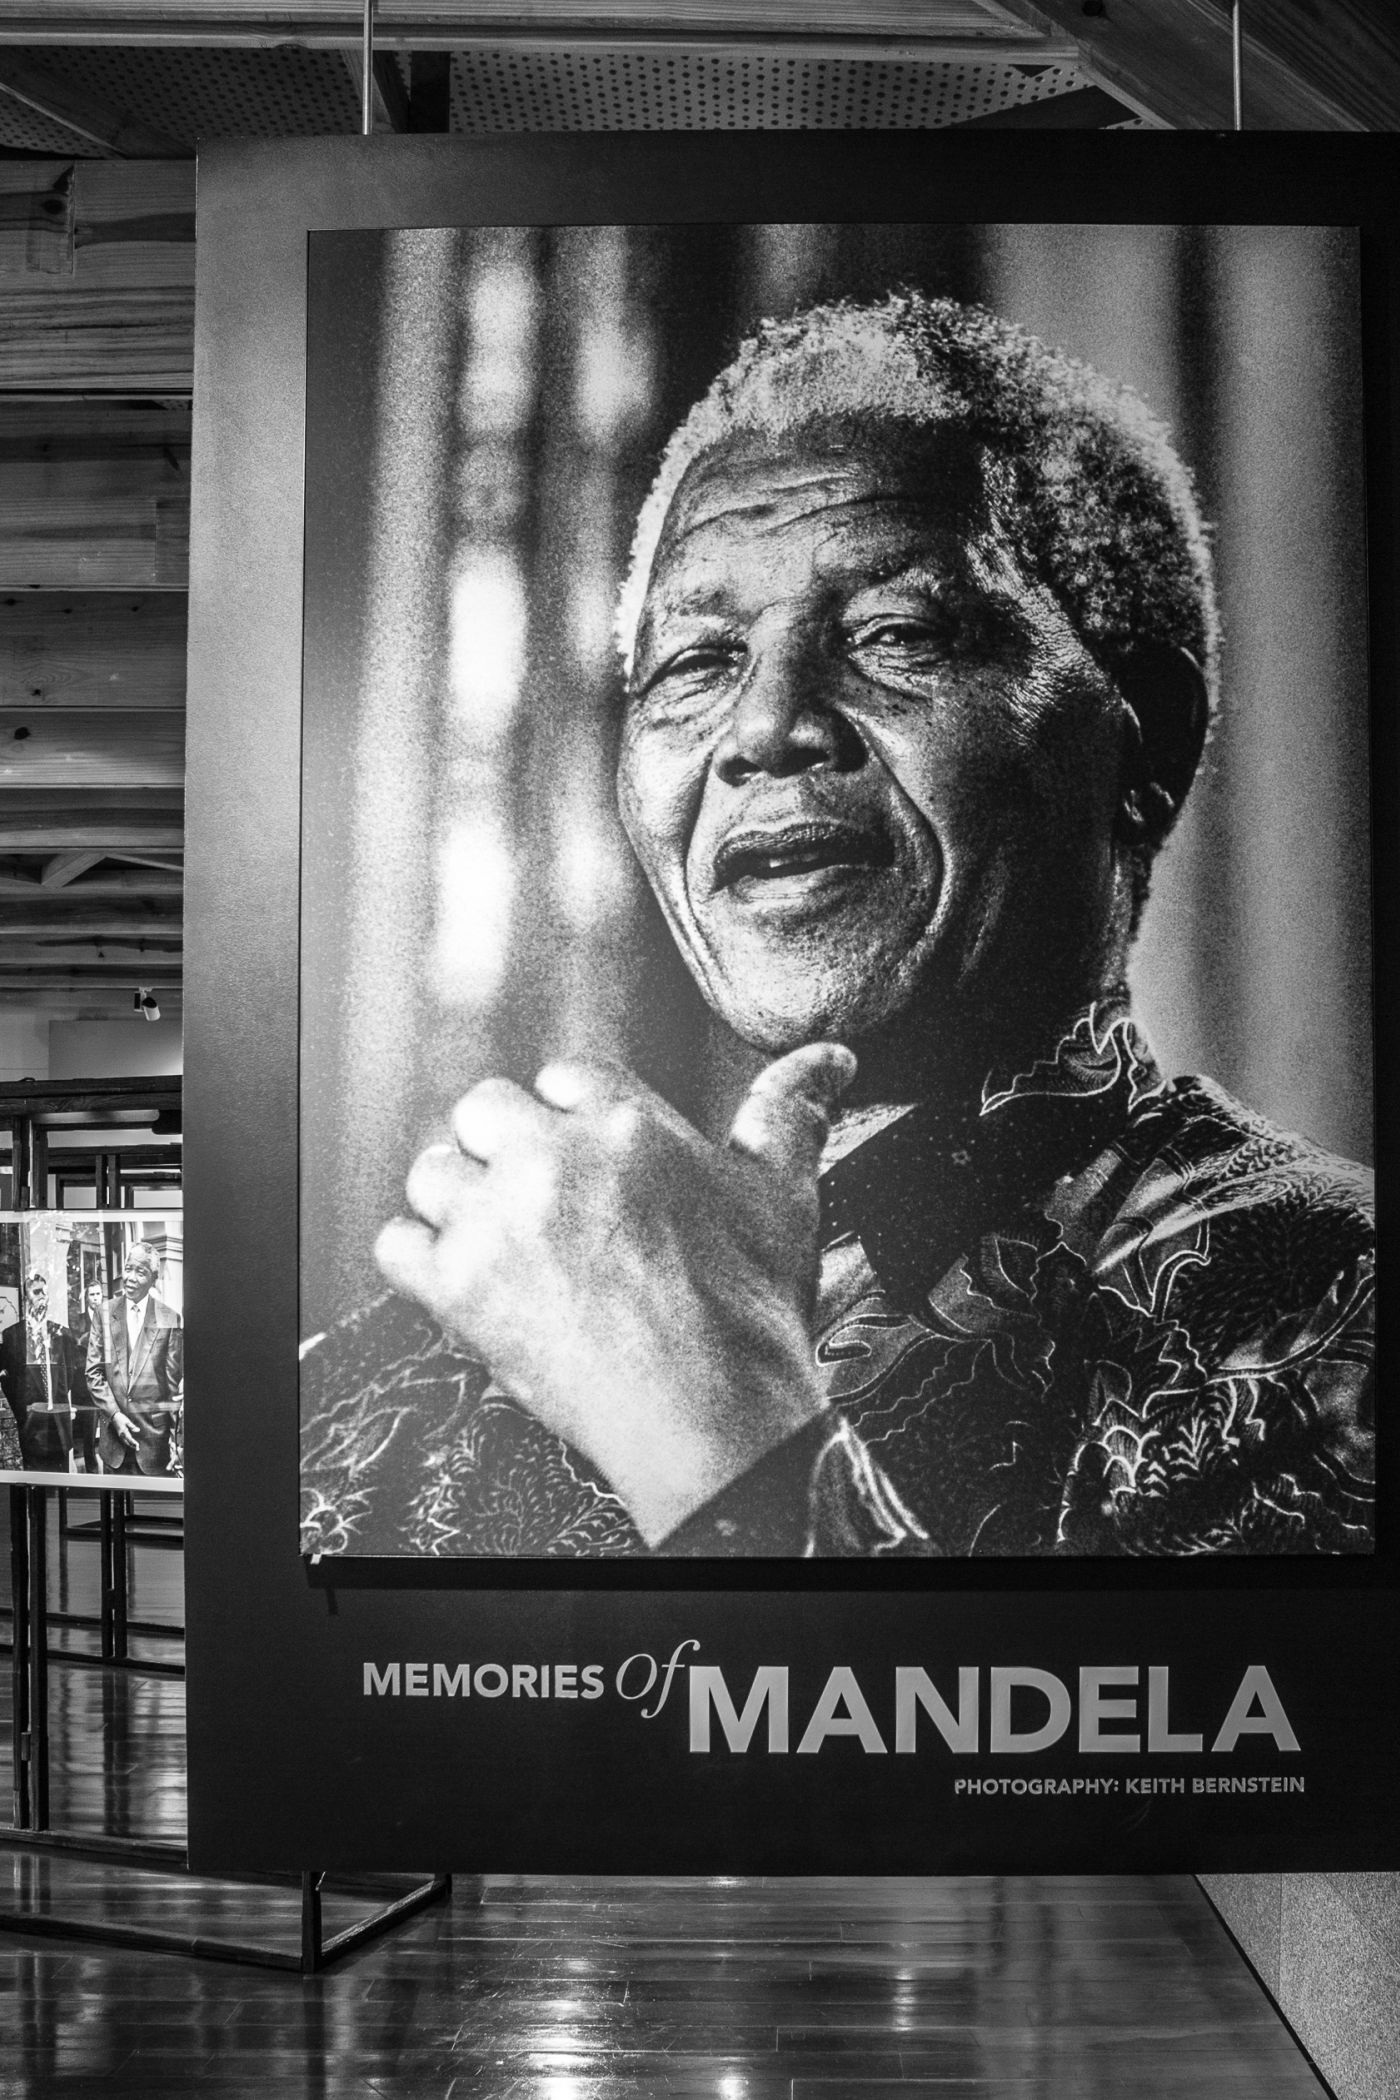 Memoriesof Mandela